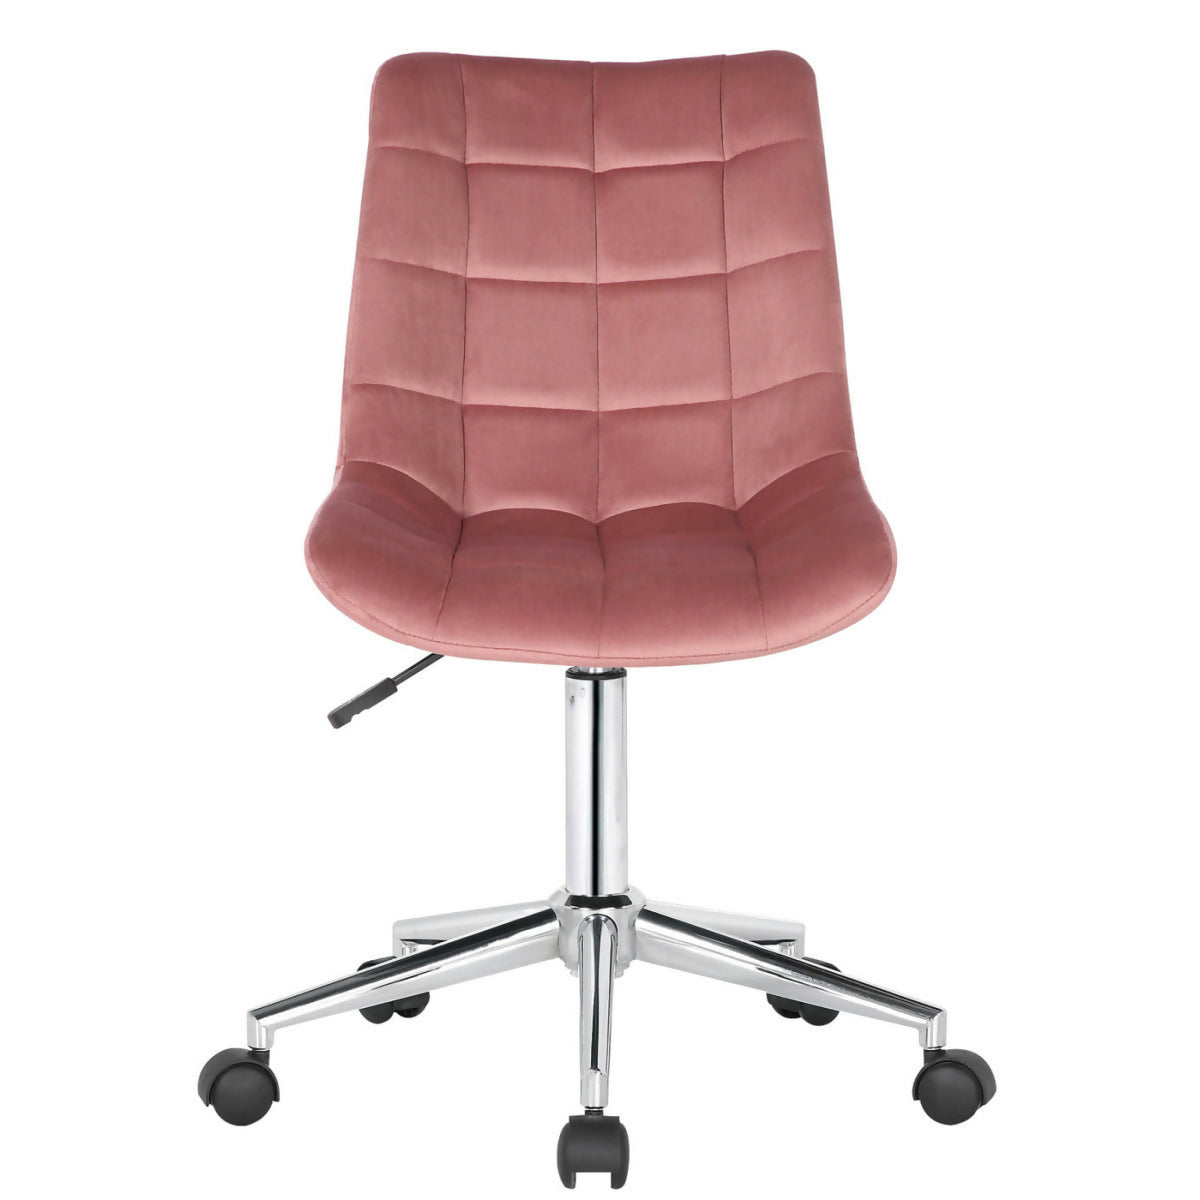 Medford office chair - Pink velvet  - 0